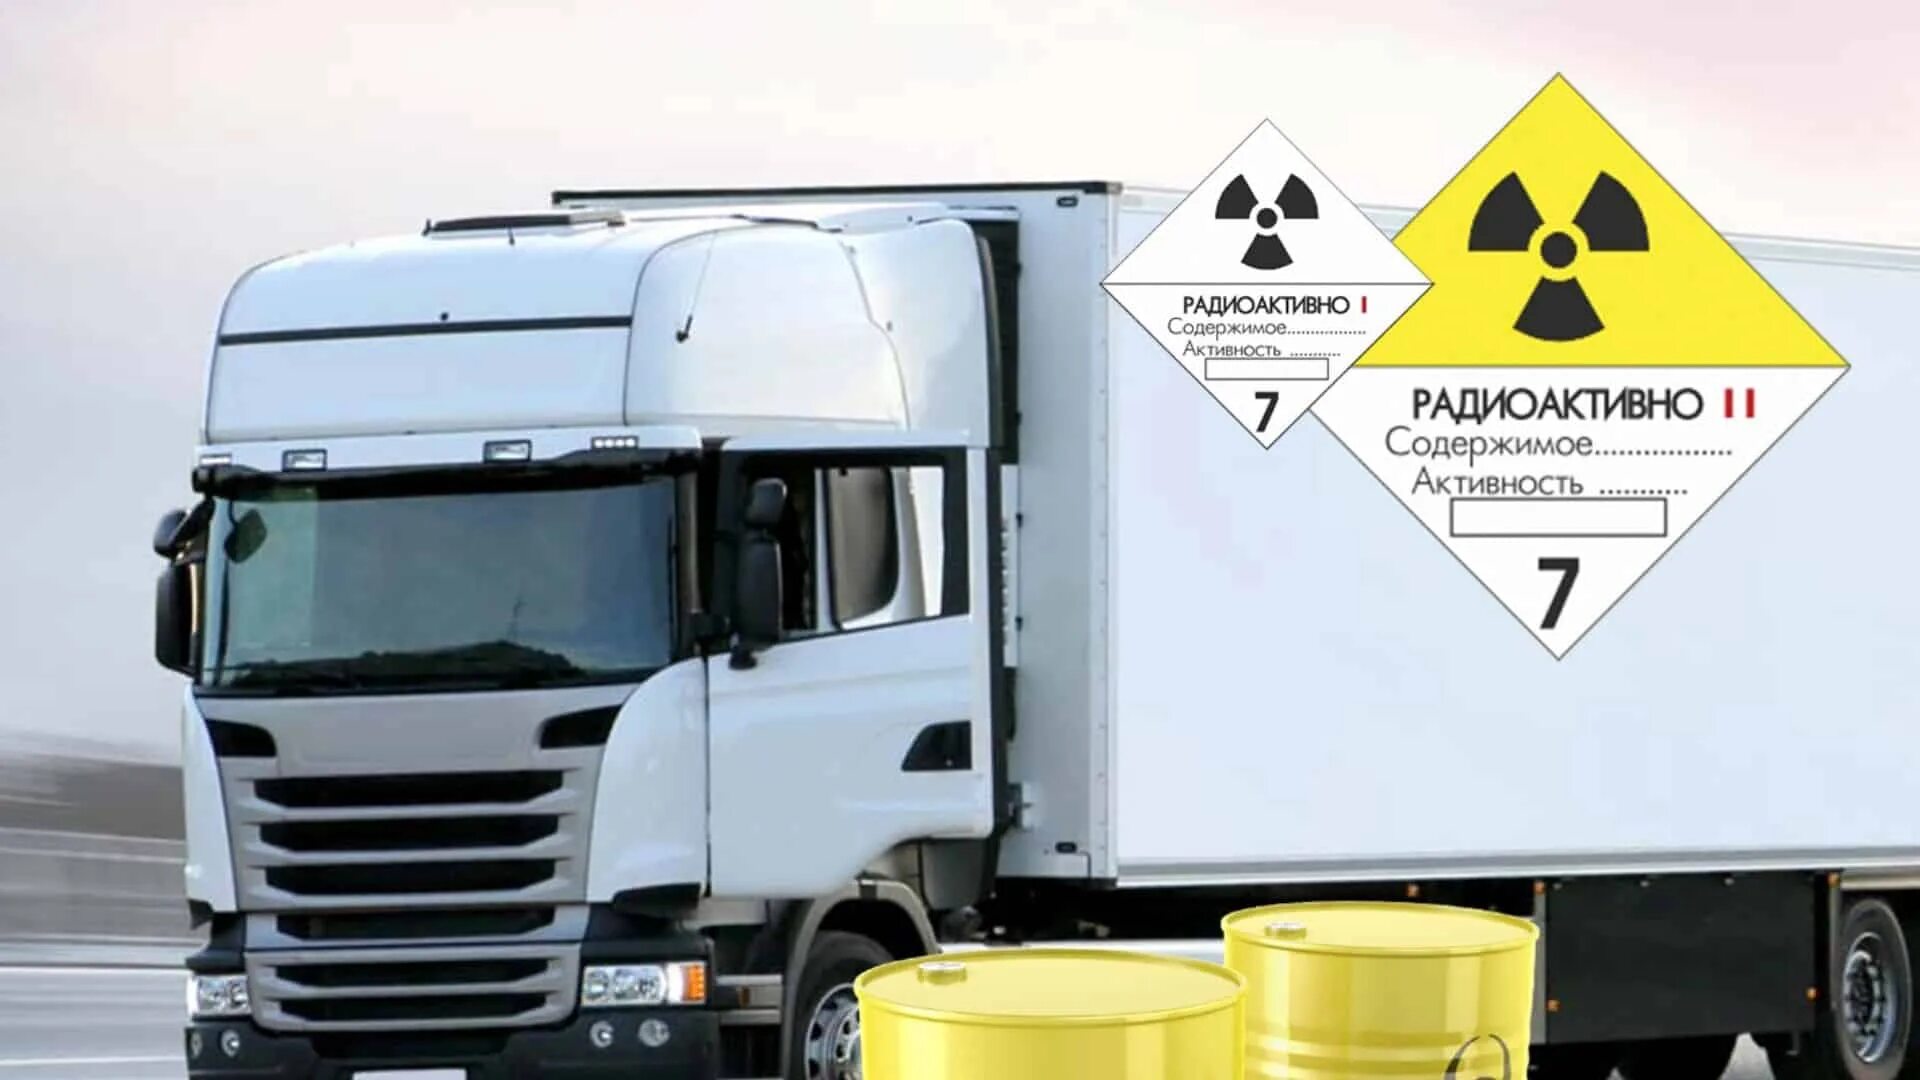 Транспортировка радиоактивных материалов. Специализированный контейнер для опасных грузов. Машина для перевозки радиоактивных материалов. Опасный груз авто.